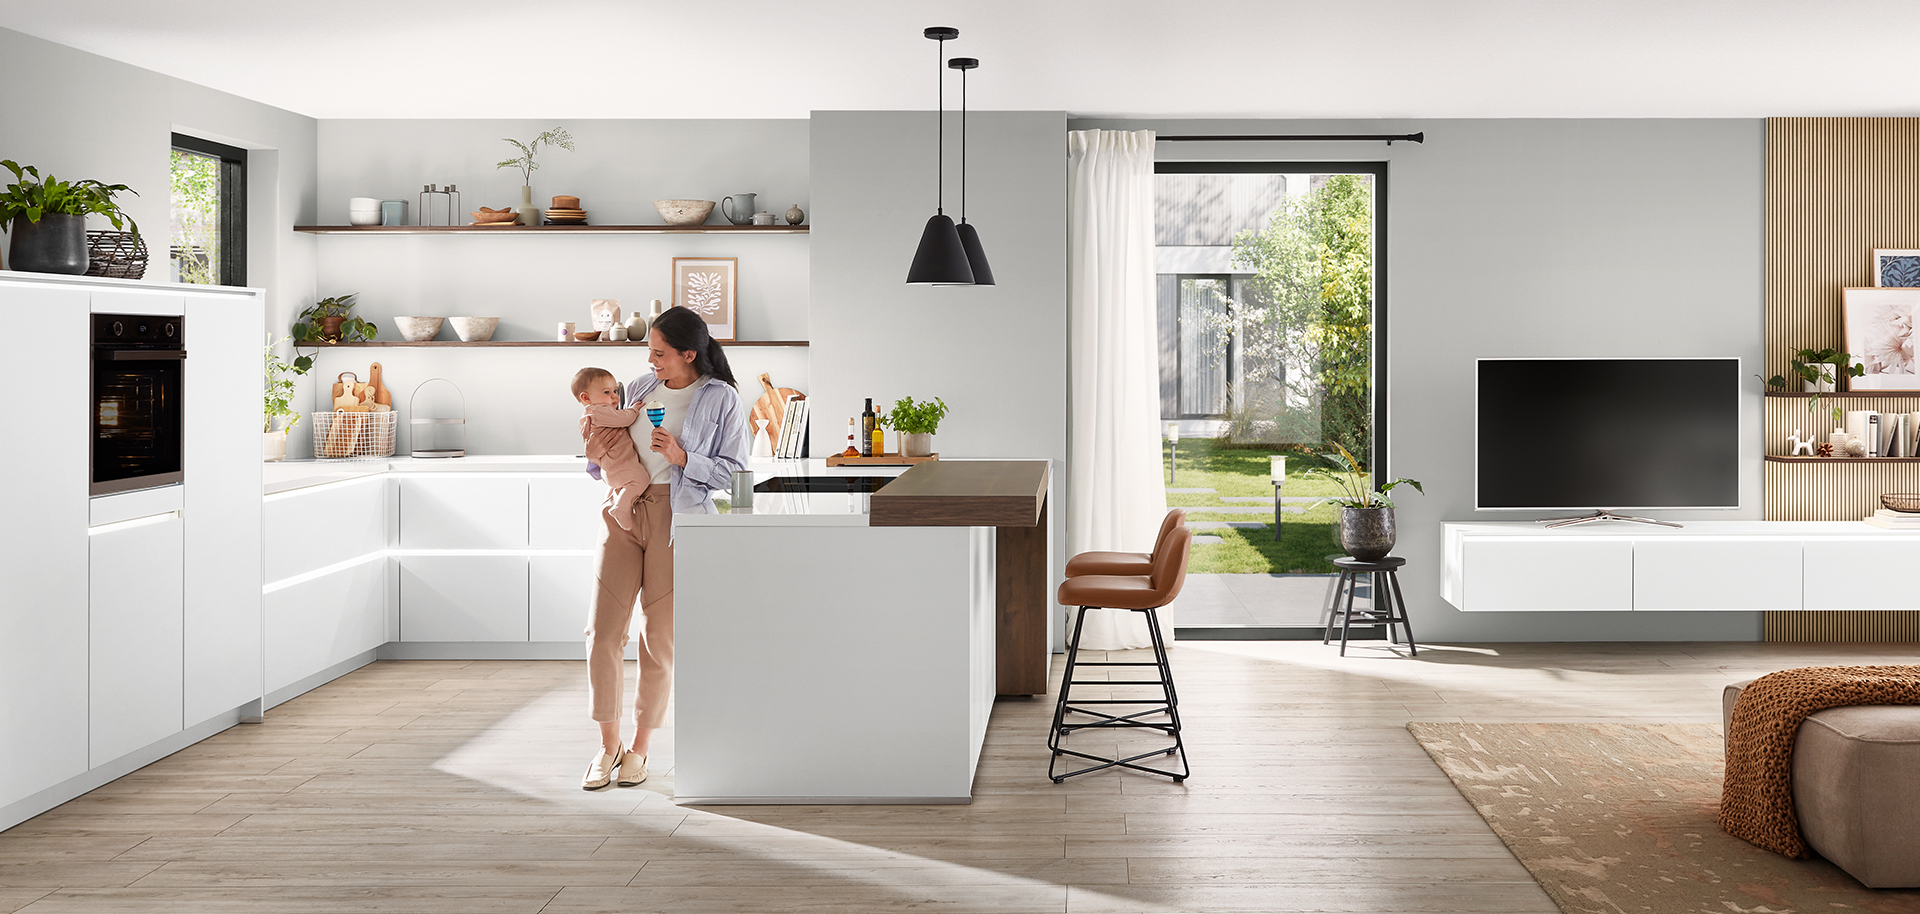 Moderne keukeninterieur met een schone, minimalistische ontwerp met witte kasten, een centraal eiland, en een jonge moeder liefdevol haar kind vasthoudend.